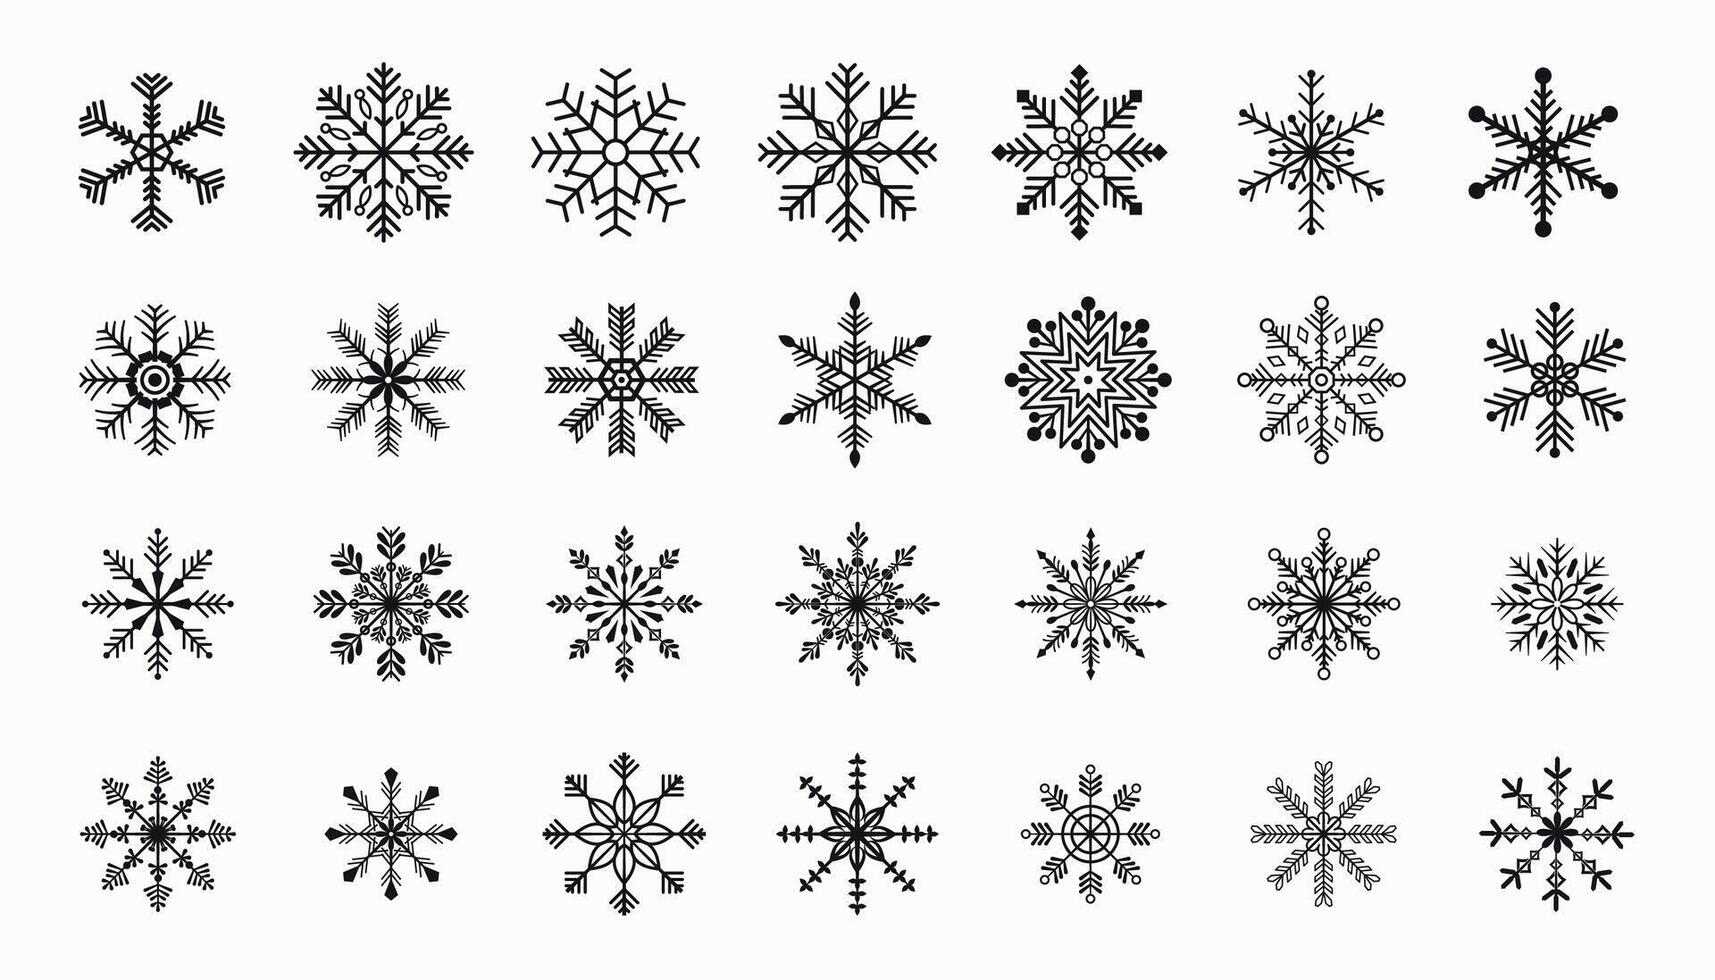 groot reeks van winter seizoen sneeuw vlok elementen voor Kerstmis ontwerp vector